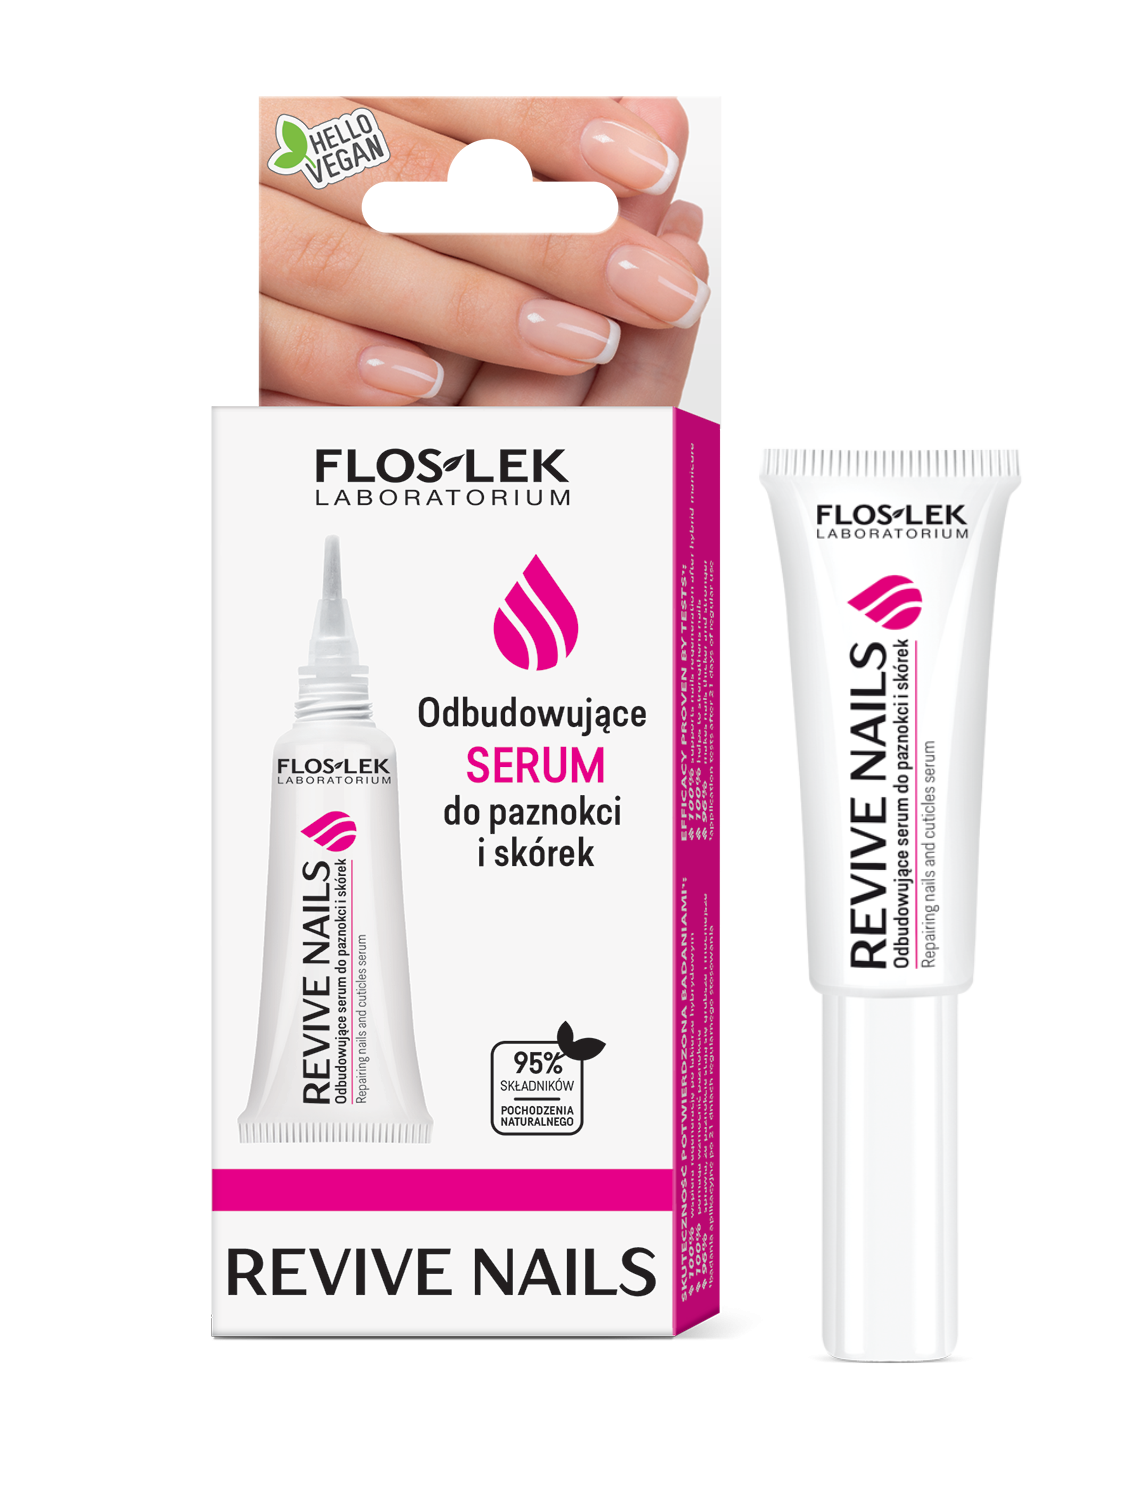 REVIVE NAILS Repairing nails and cuticles serum - 8 ml - Floslek